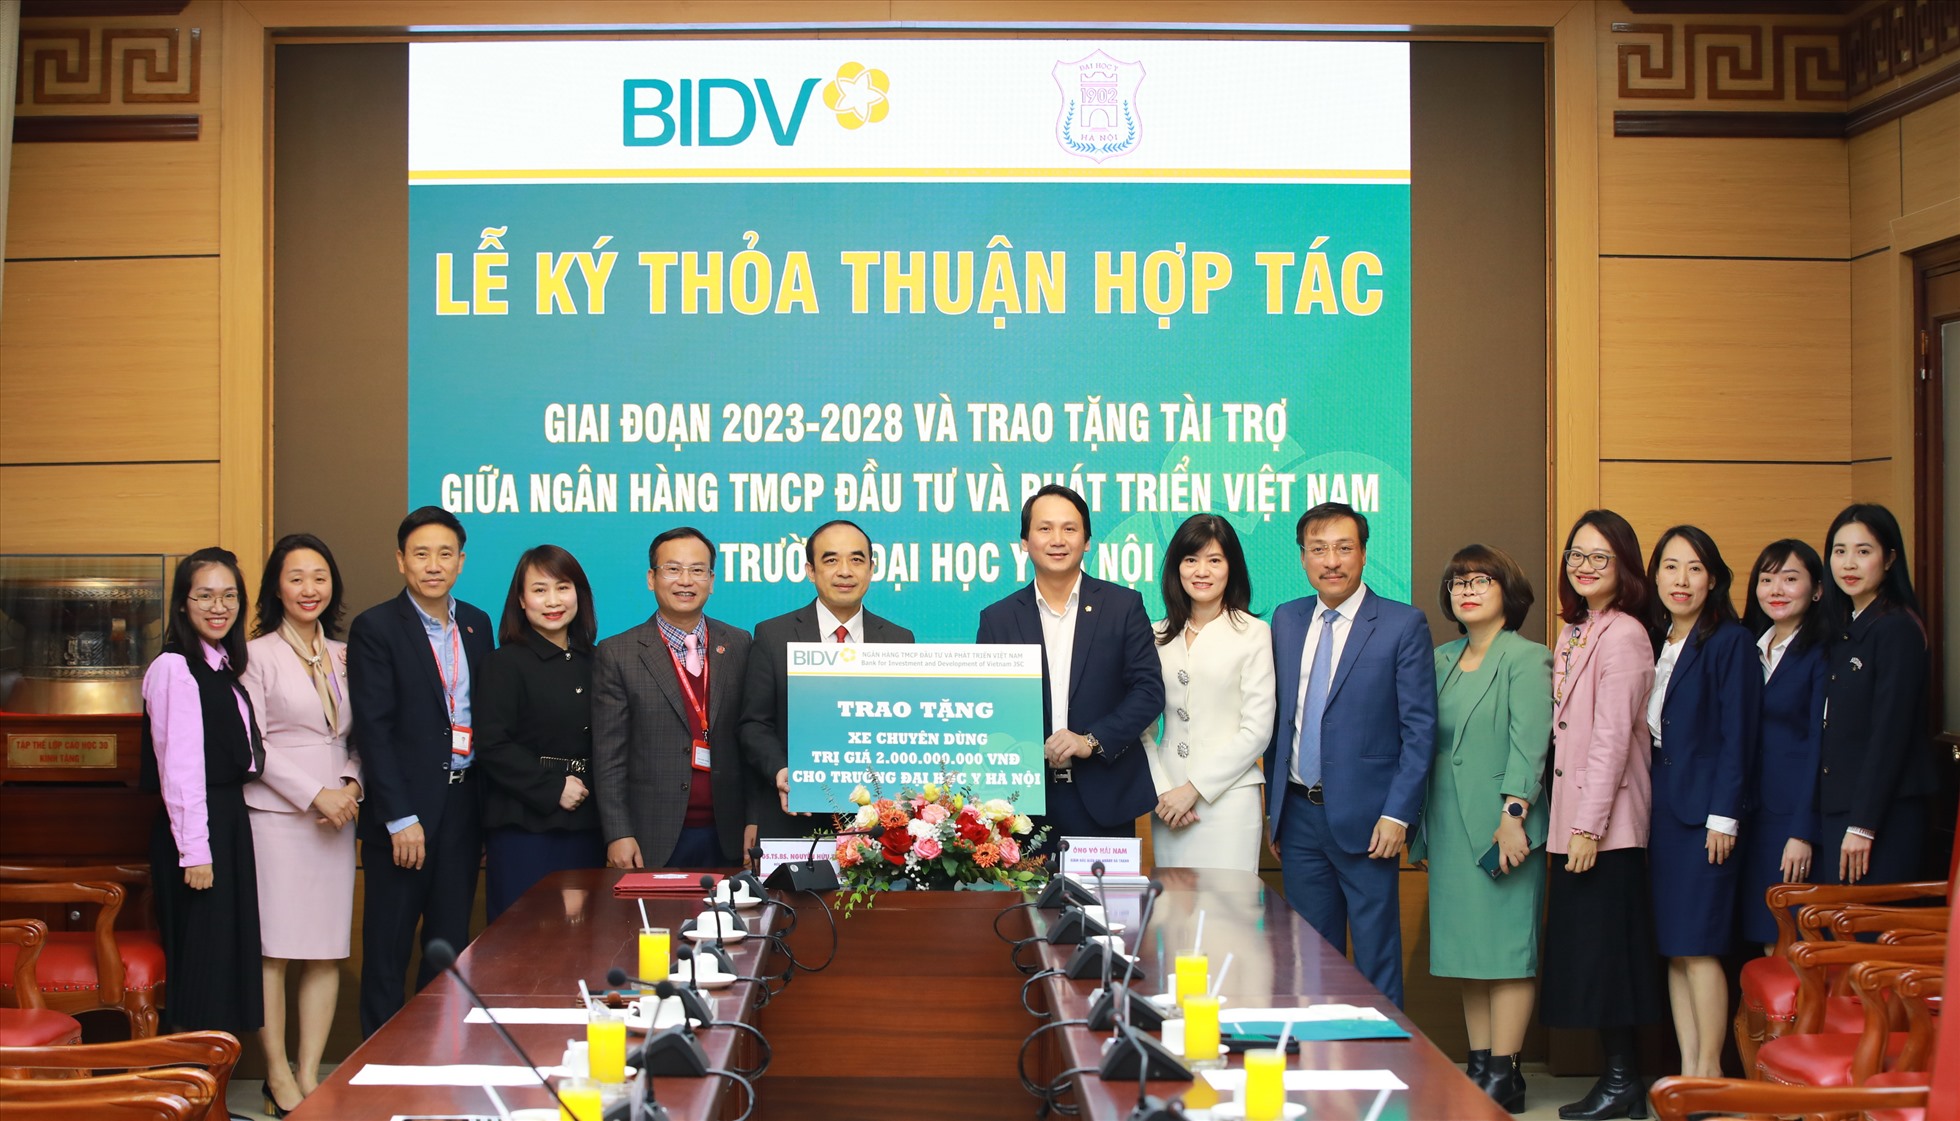 : Ông Trần Long (Phó Tổng Giám đốc BIDV) trao biển tài trợ cho đại diện Trường Đại học Y Hà Nội - GS.TS.BS Nguyễn Hữu Tú (Hiệu trưởng Nhà trường